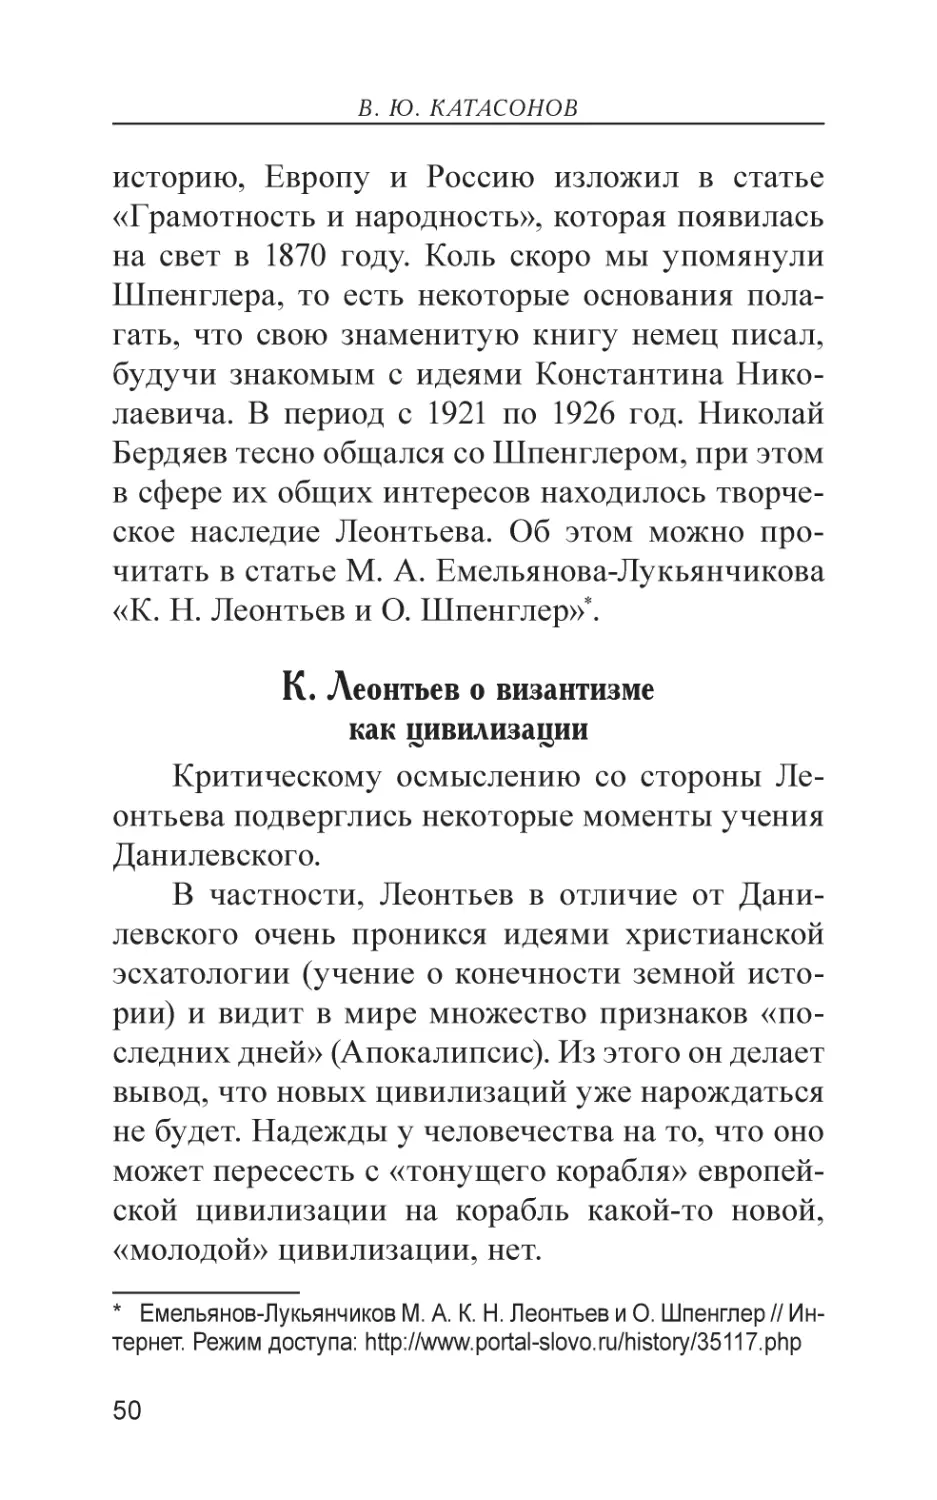 К. Леонтьев о византизме как цивилизации